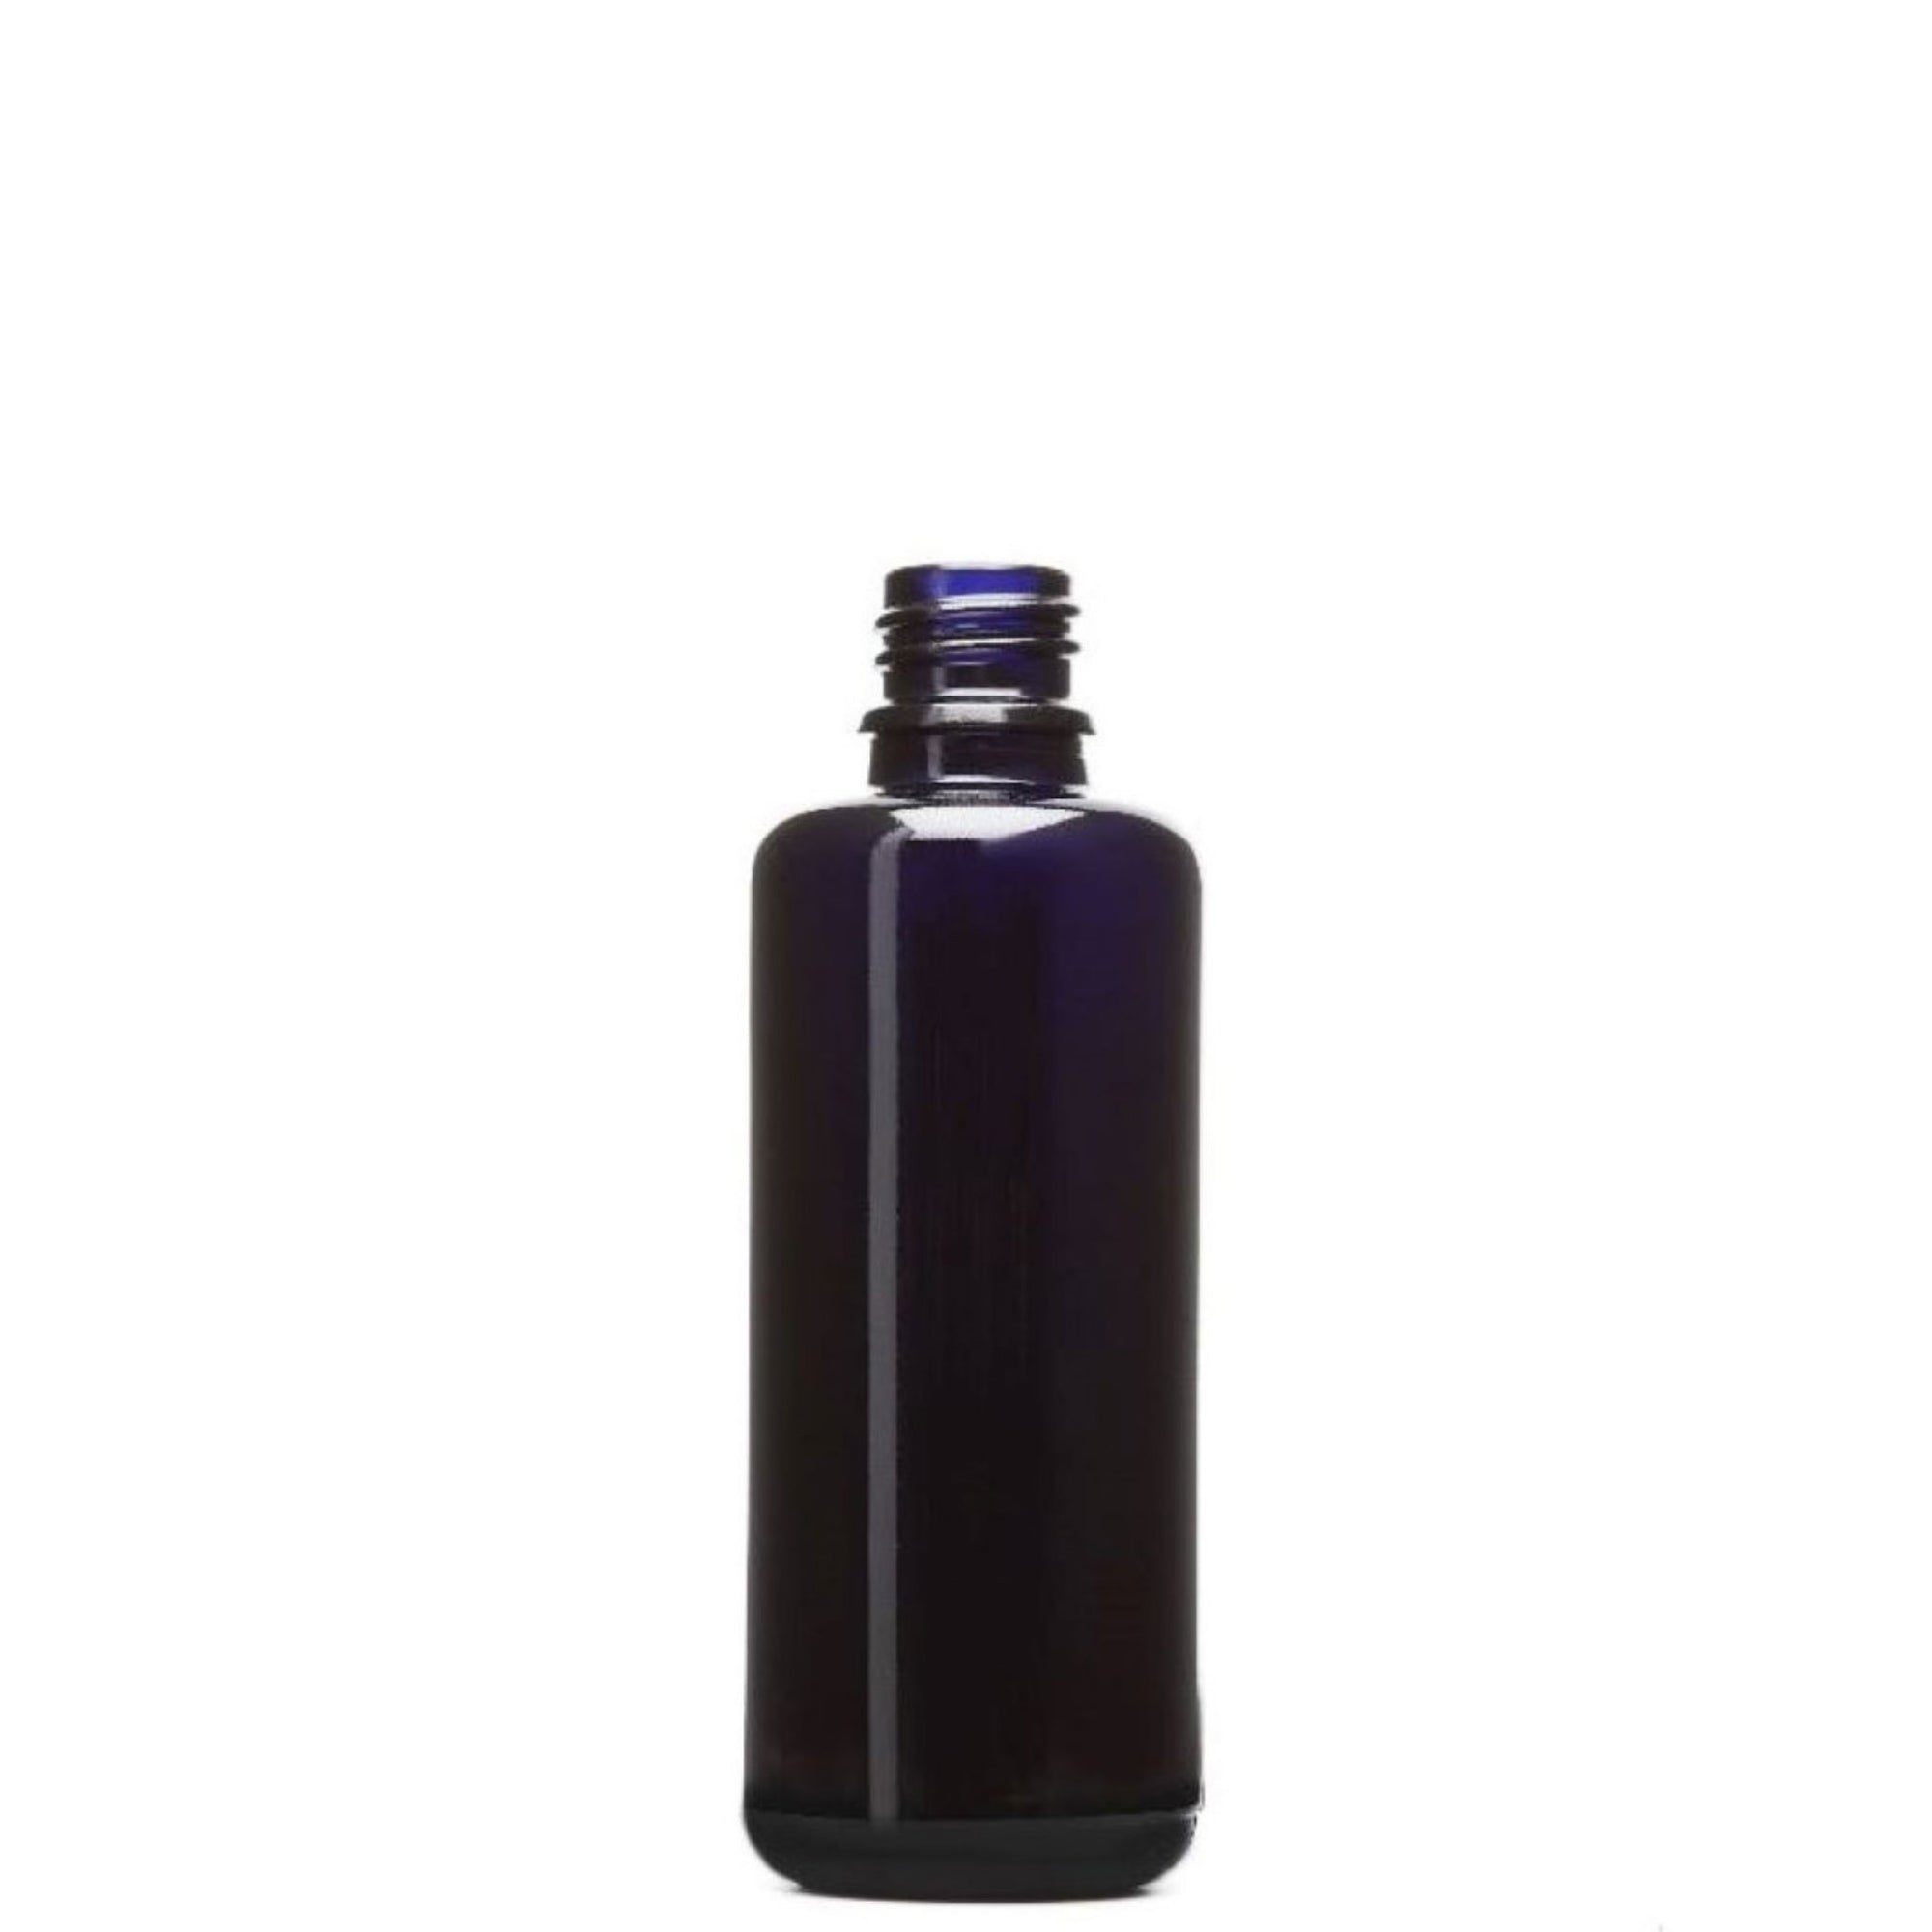 Violettglasflasche 50 ml Naturkosmetik Zubehör oelfaktorisch 